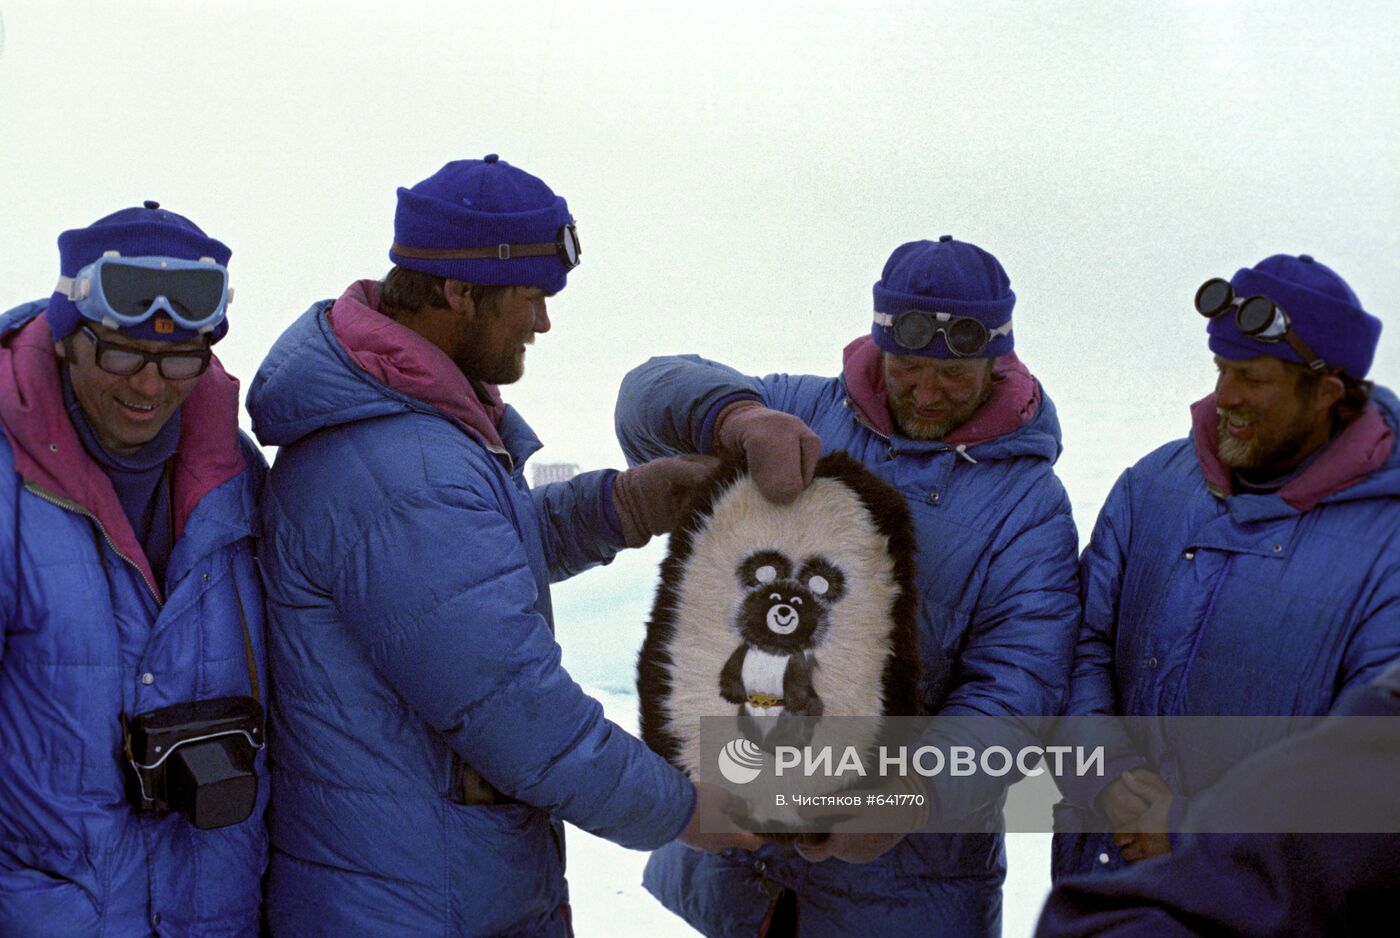 Участникам экспедиции вручают сувениры на Северном полюсе